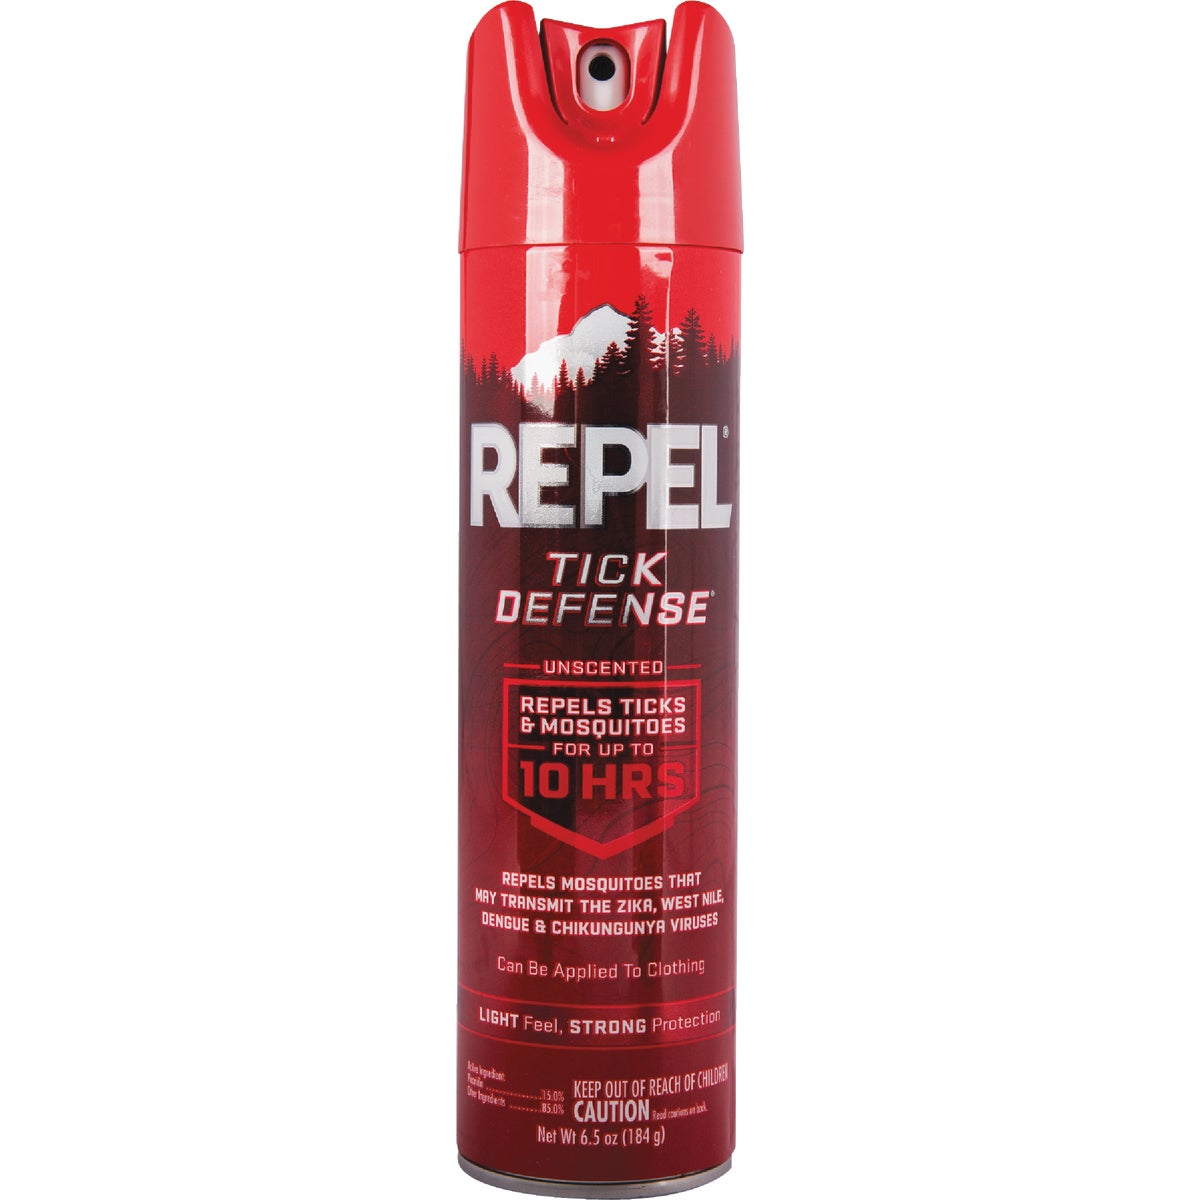 Repel Tick Defense 6.5 Oz. Insect Repellent Aerosol Spray